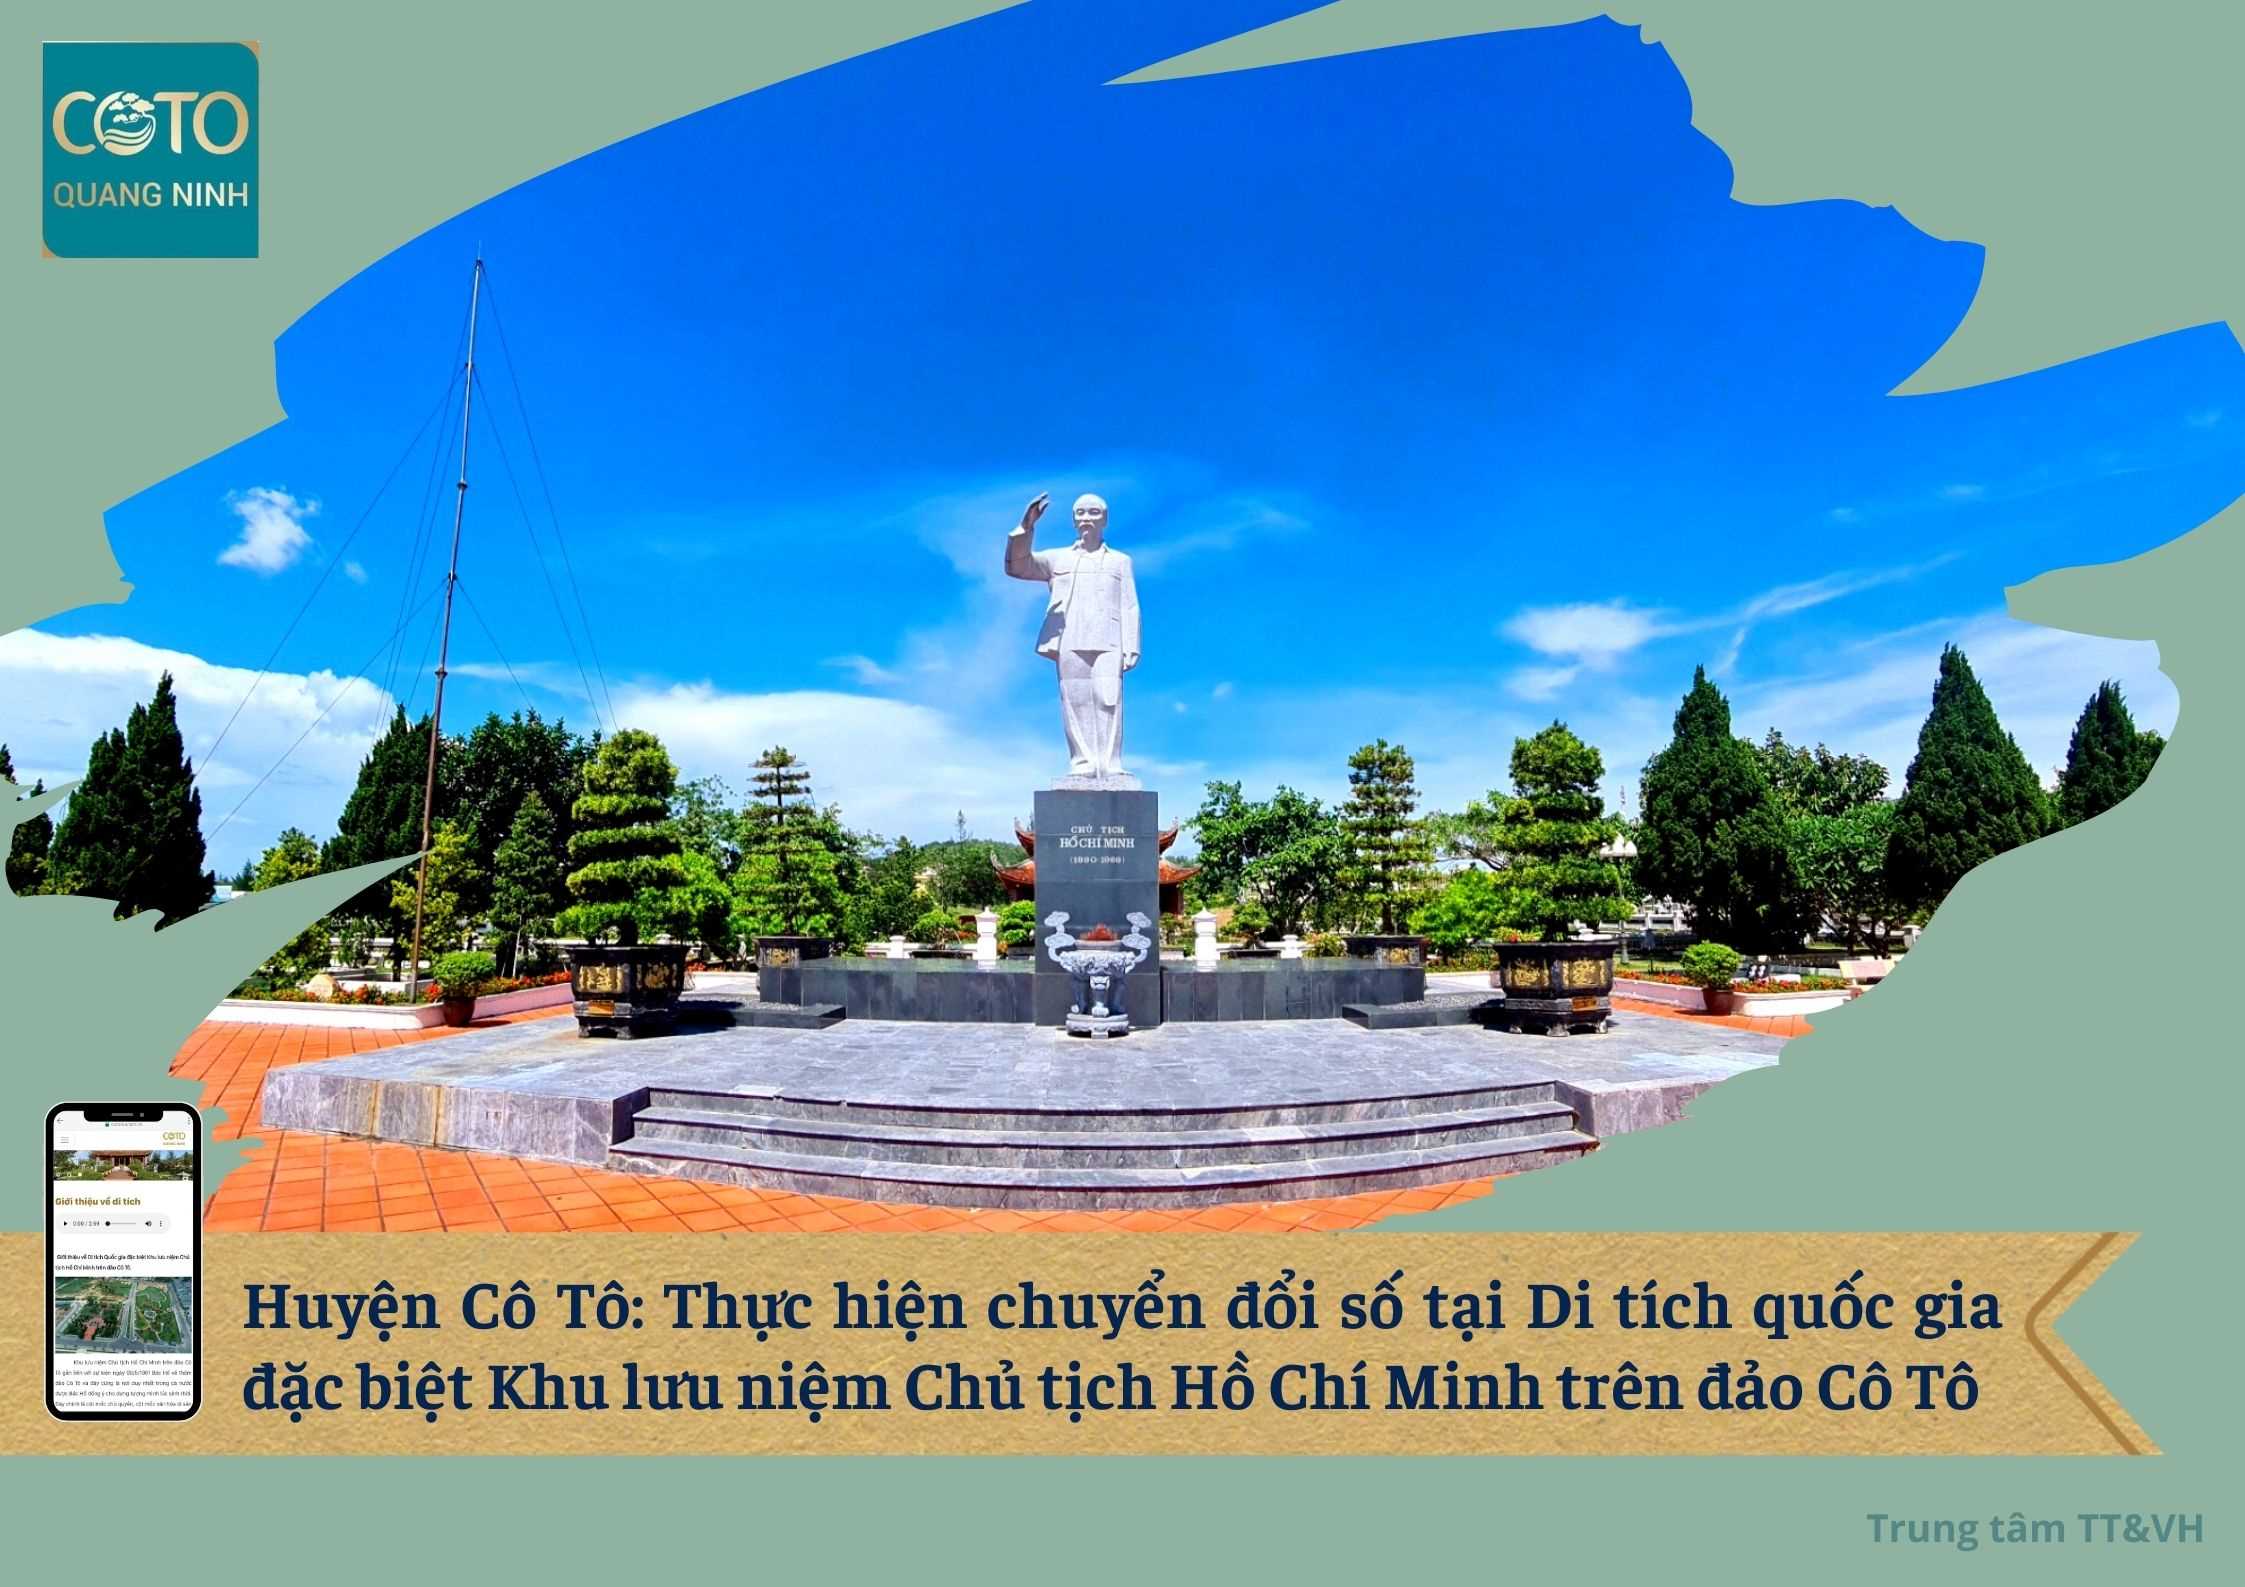 Huyện Cô Tô: Thực hiện chuyển đổi số tại Di tích quốc gia đặc biệt Khu lưu niệm Chủ tịch Hồ Chí Minh trên đảo Cô Tô